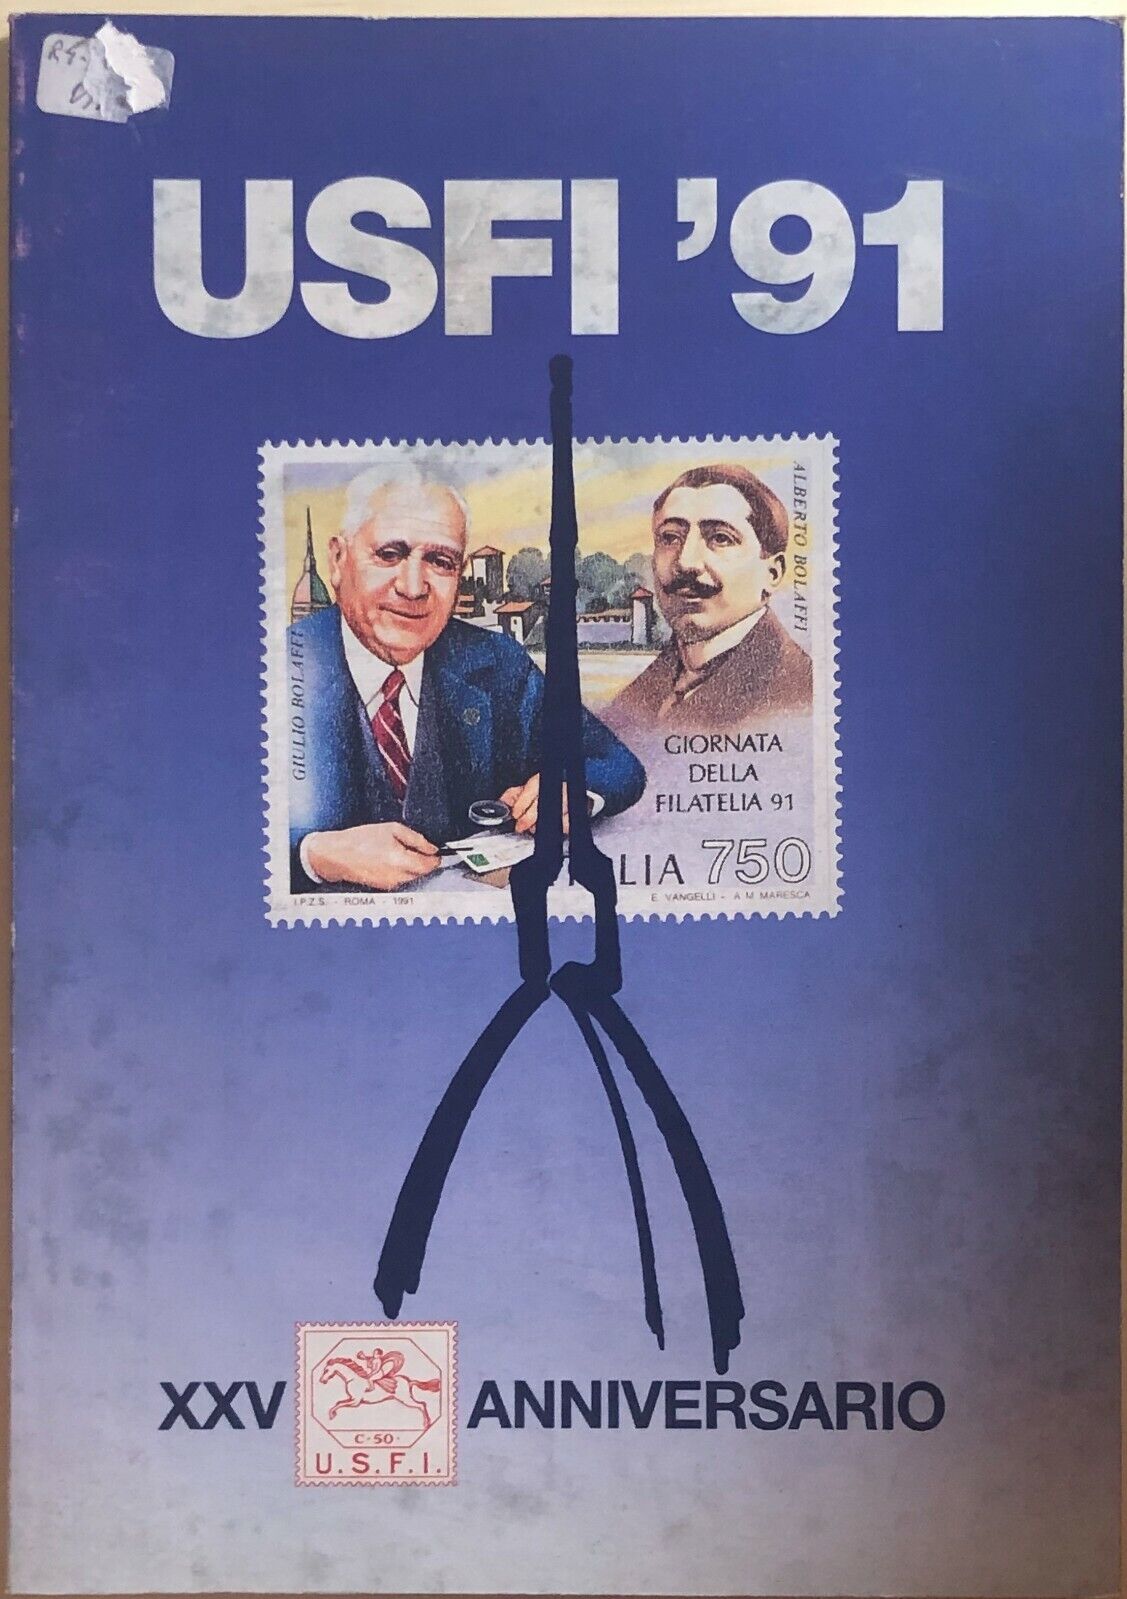 USFI ?91 XXV Anniversario di Aa.vv., 1991, Unione Stampa Filatelica Italiana